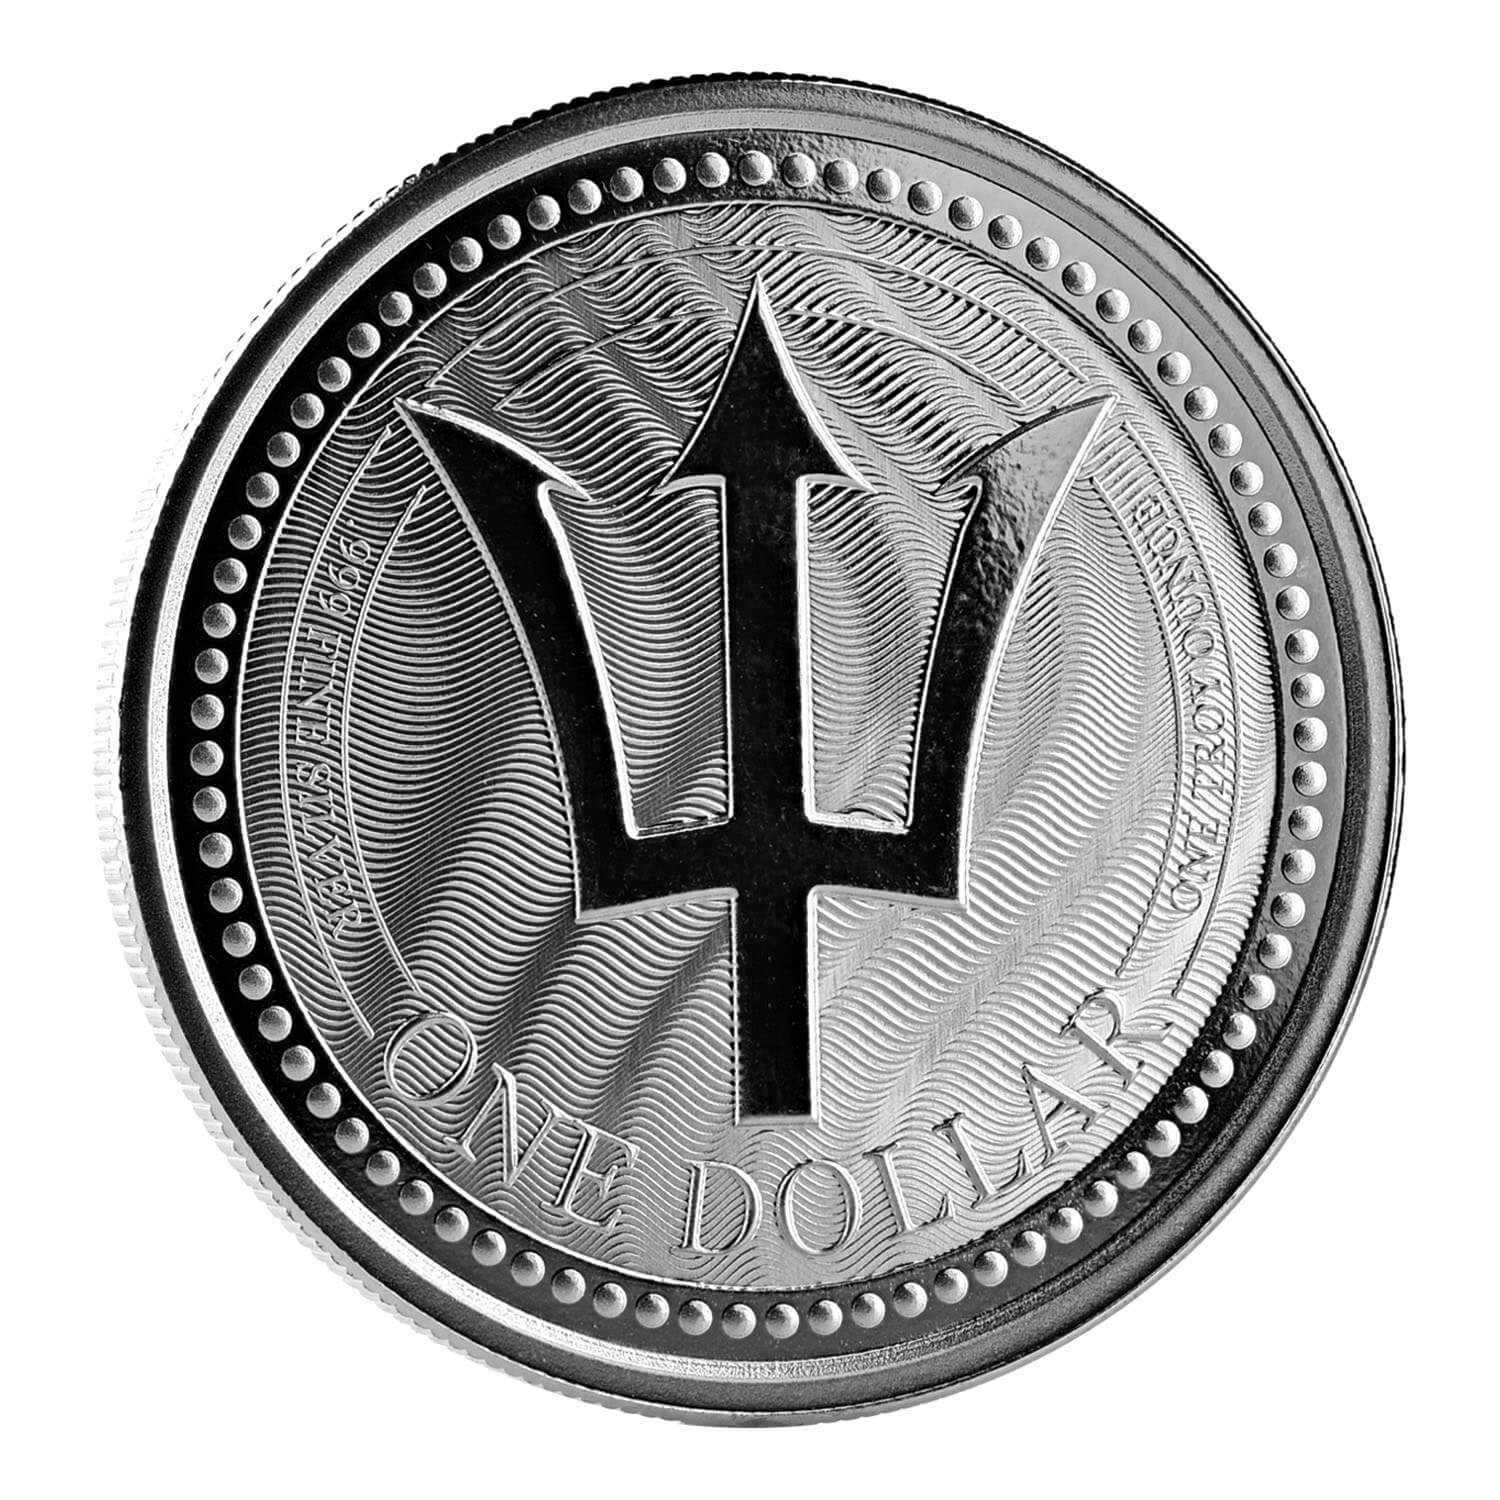 2017 Barbados Trident 1 oz Silver Coin